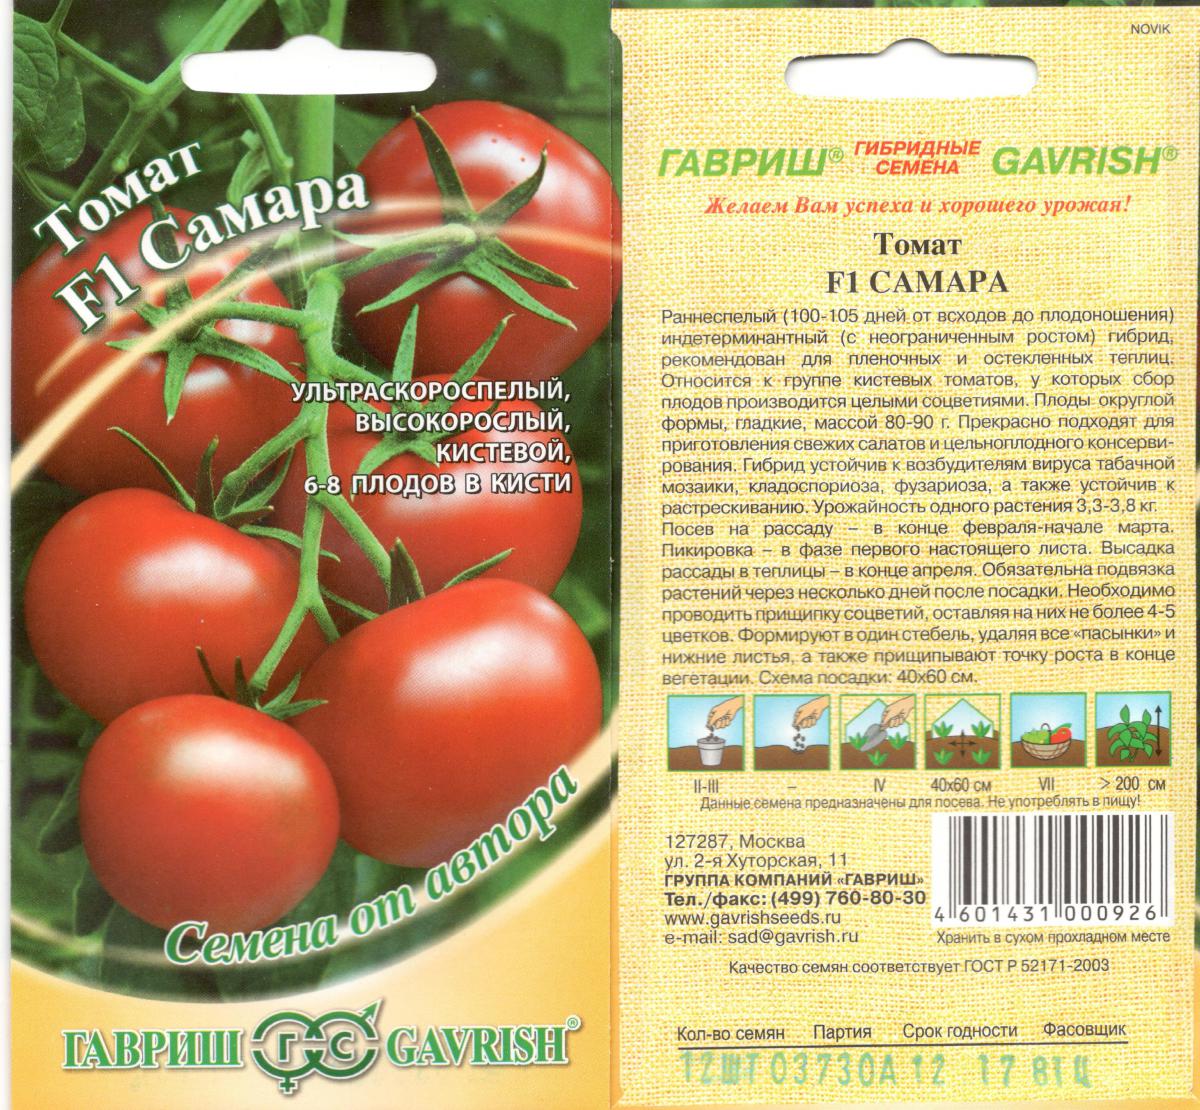 Описание гибридного сорта томата торквей и рекомендации по выращиванию растения